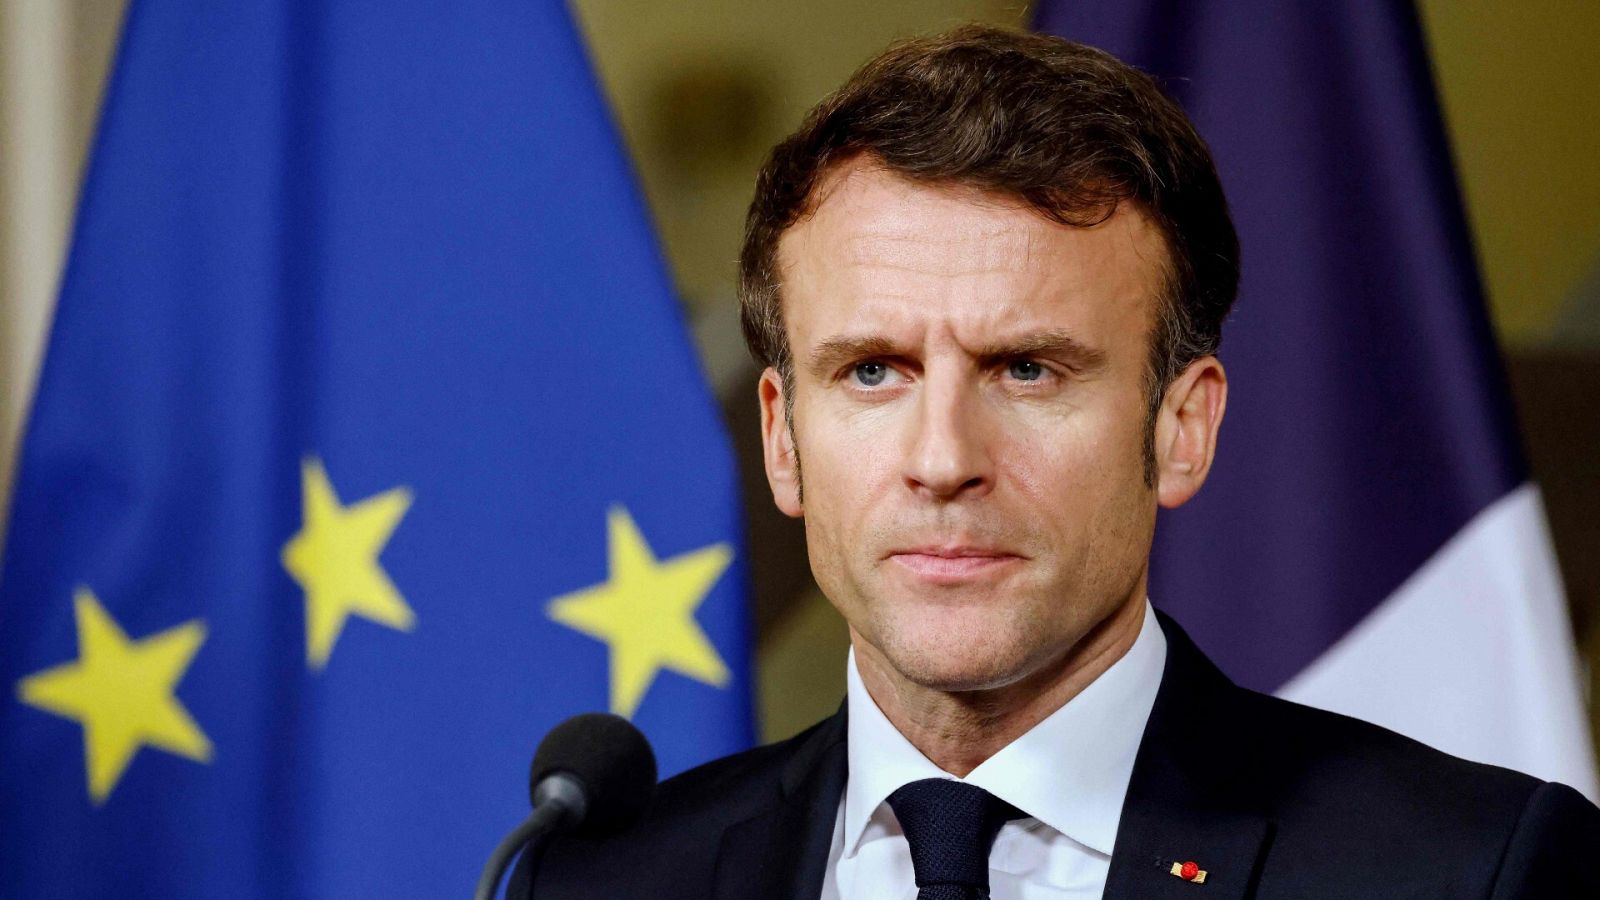 Macron defiende su reforma de pensiones en la víspera de una nueva jornada de protestas